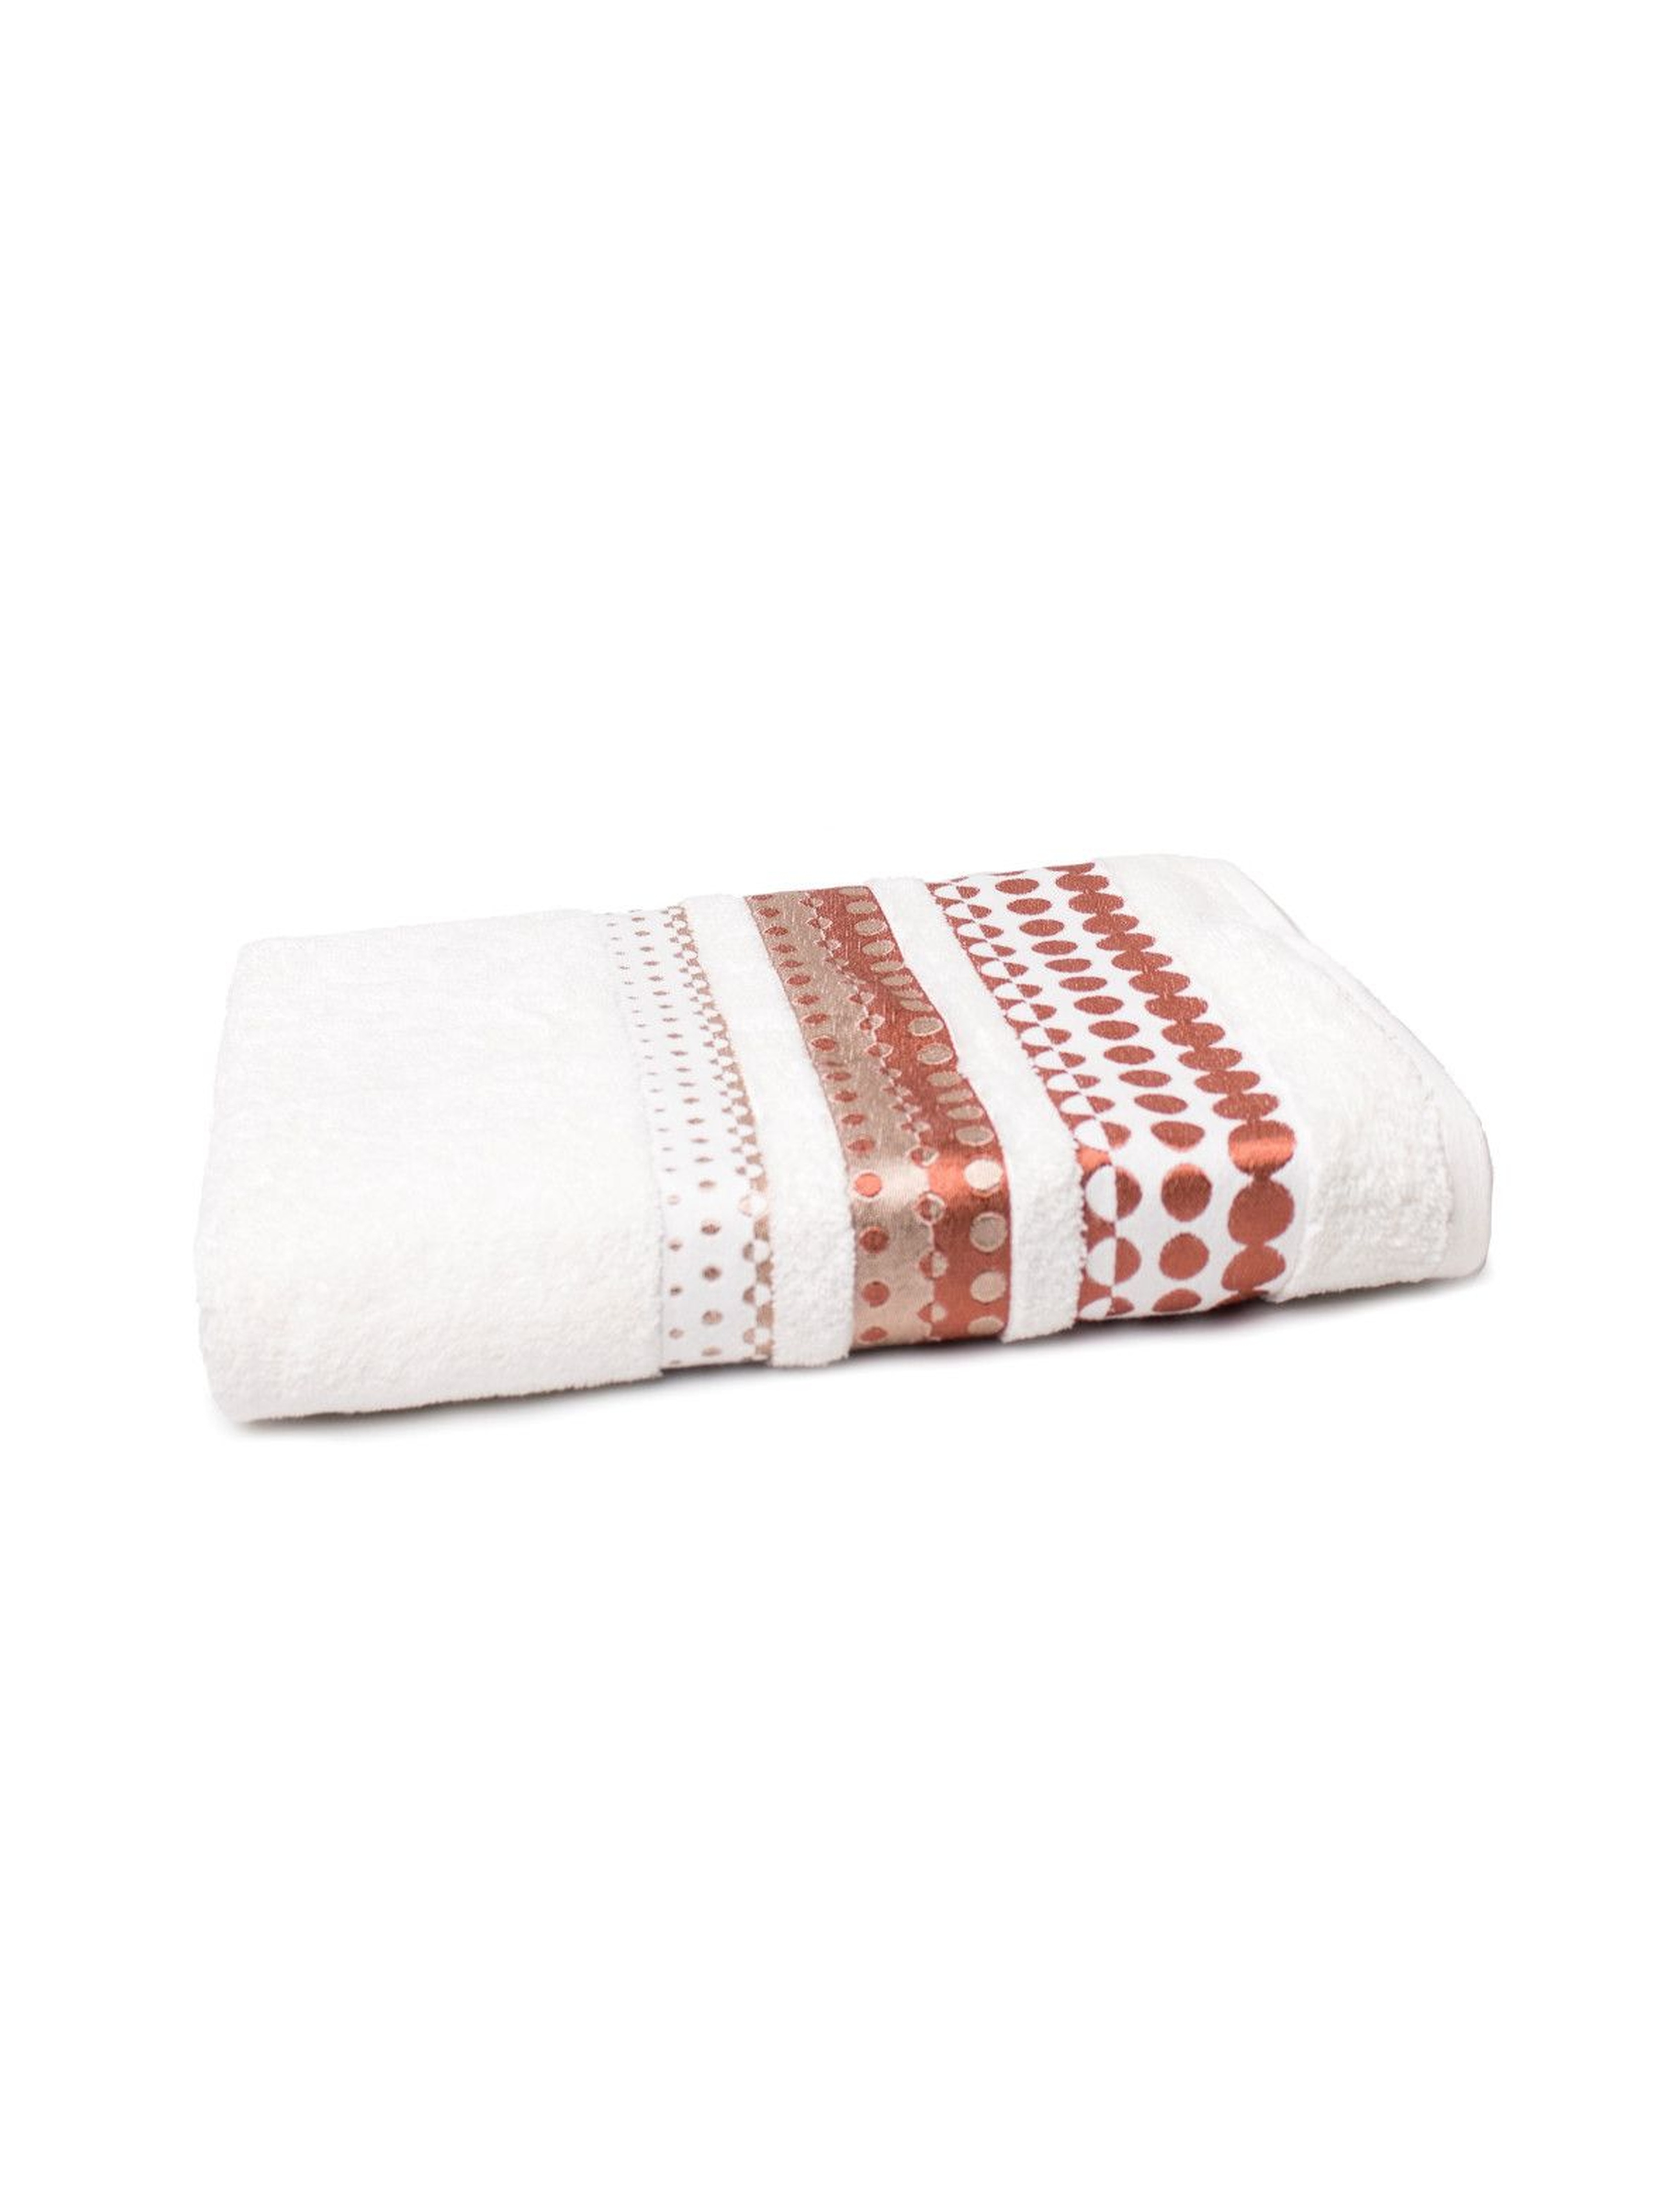 Bawełniany ręcznik w kolorze kremowym o wymiarach 70x140 cm